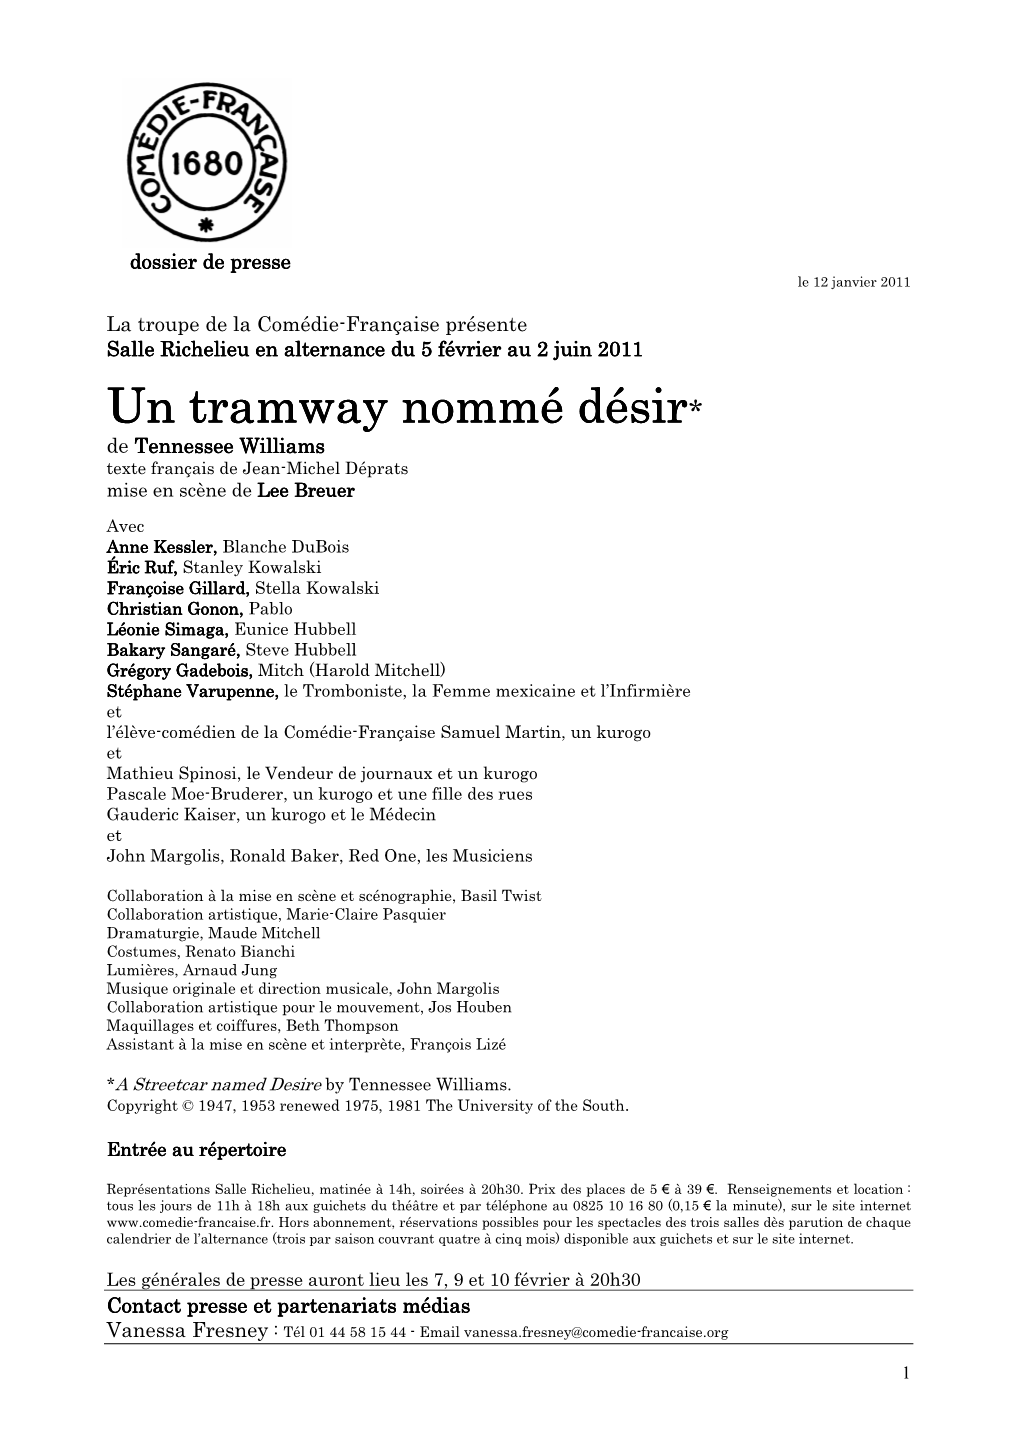 Dossier De Presse Un Tramway Nommé Désir